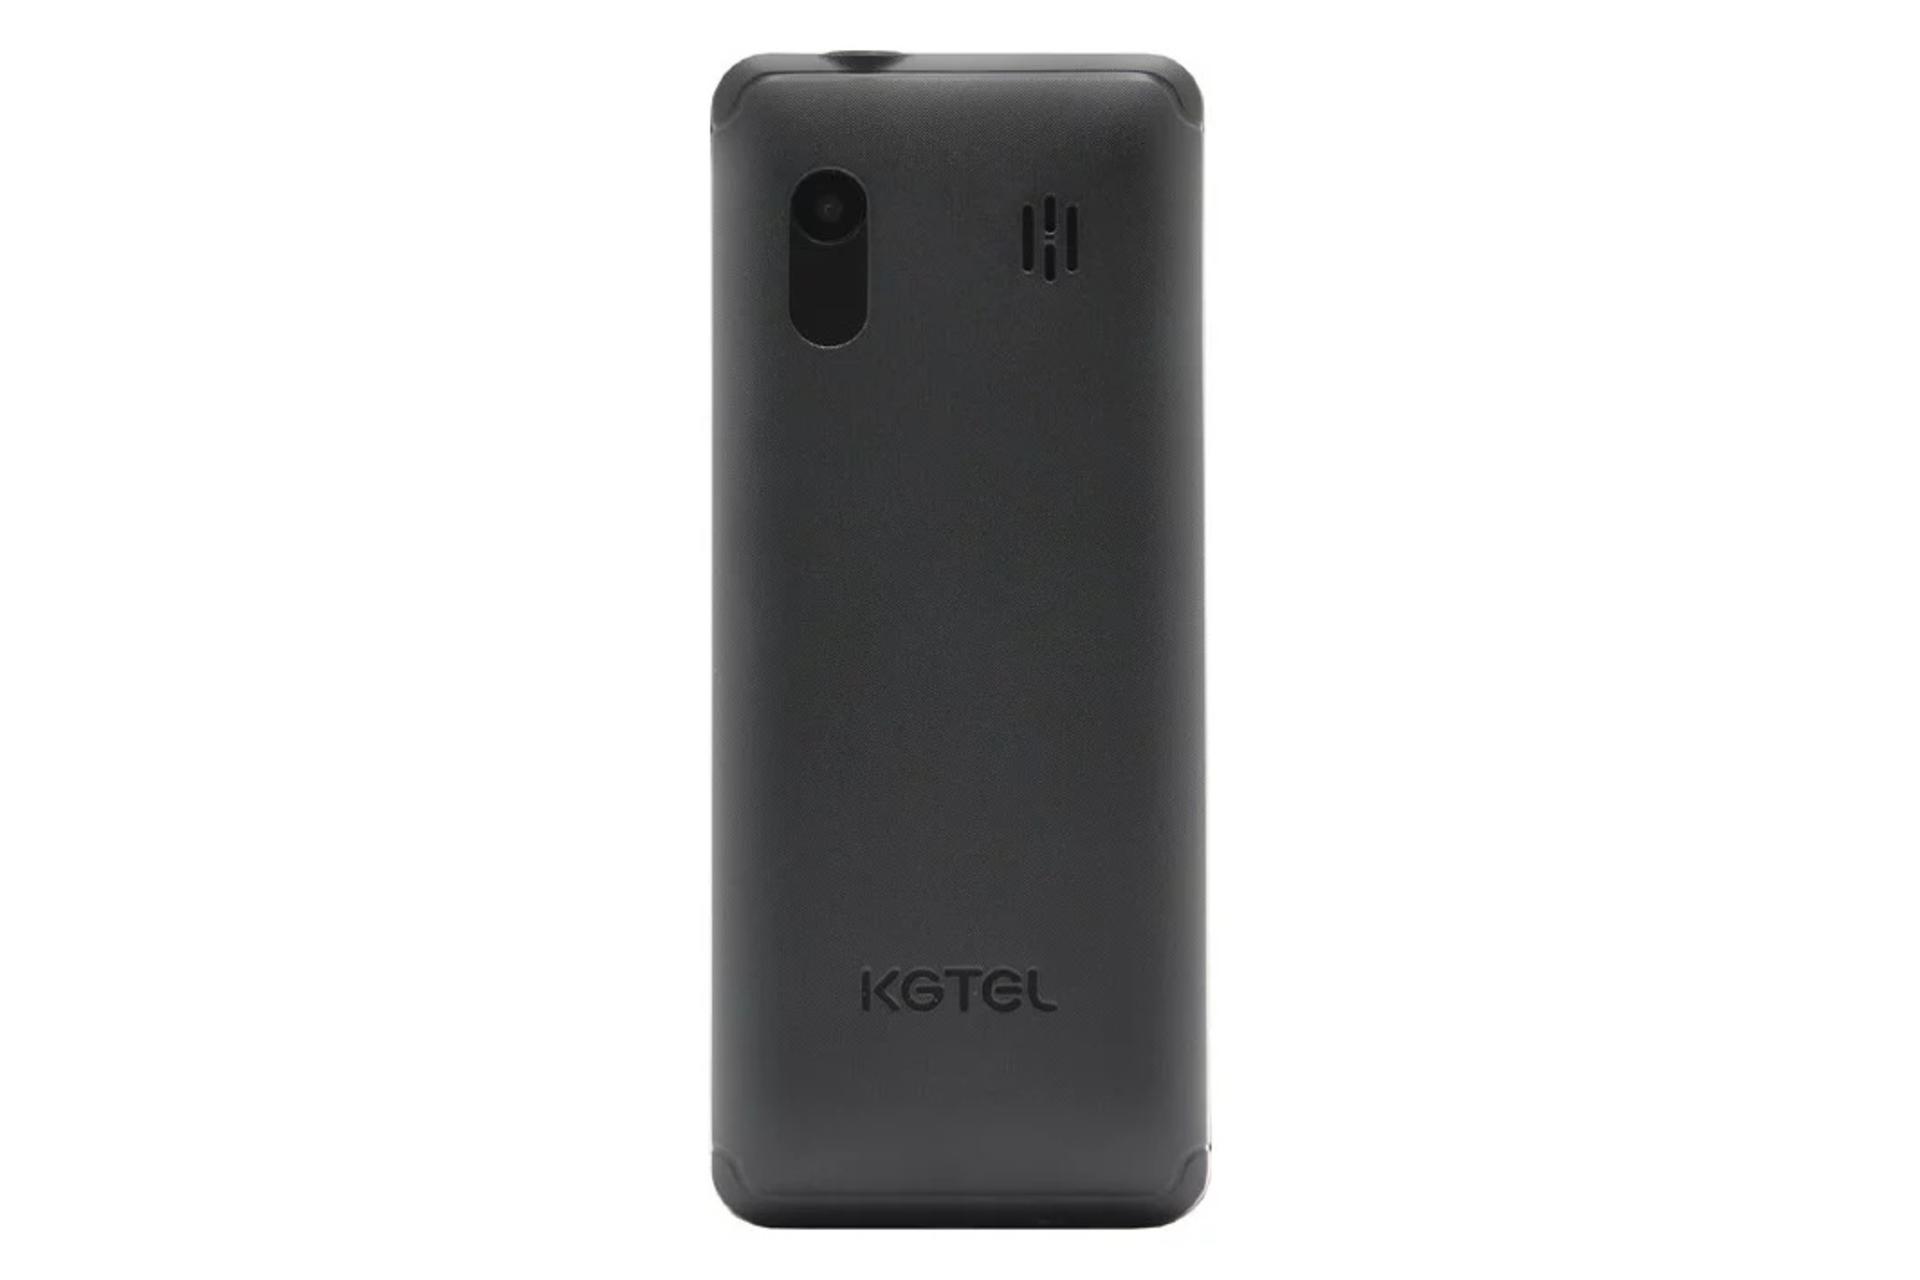 پنل پشت گوشی موبایل کاجیتل KGTEL K10